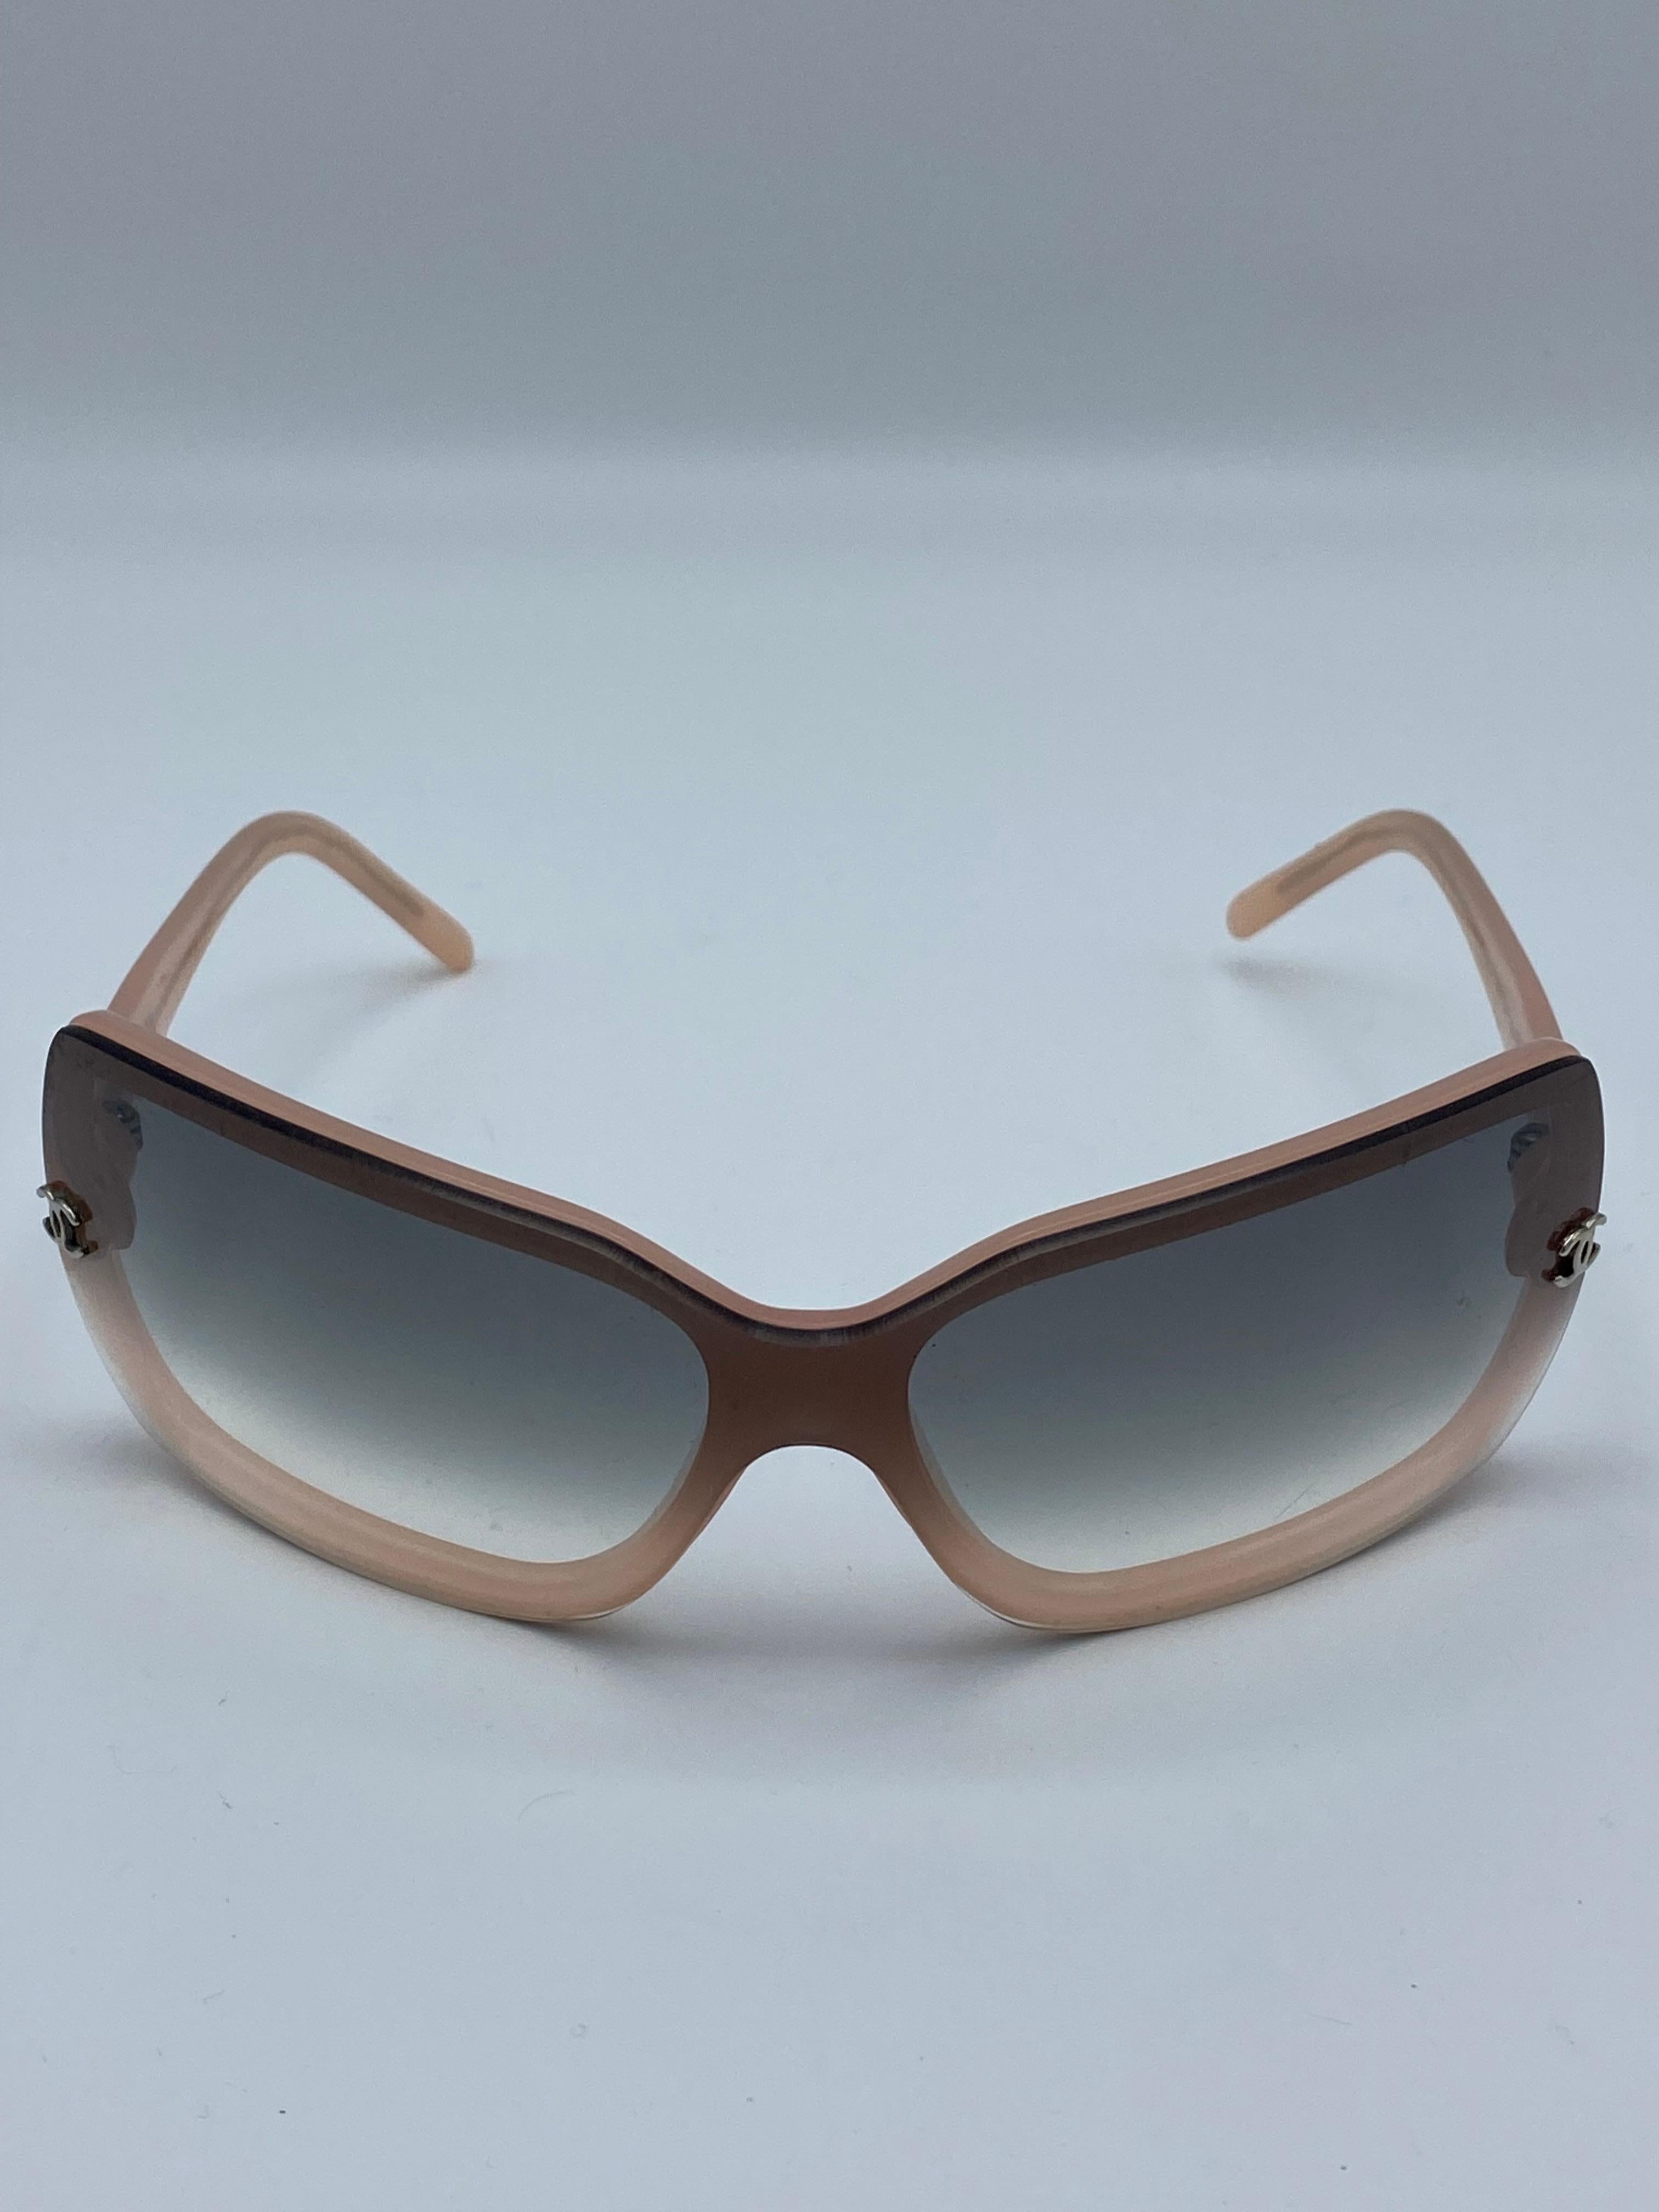 Détails du produit :

Les lunettes sont dotées de verres gris dégradés, d'une monture rose et d'une monture CC  sur les côtés.